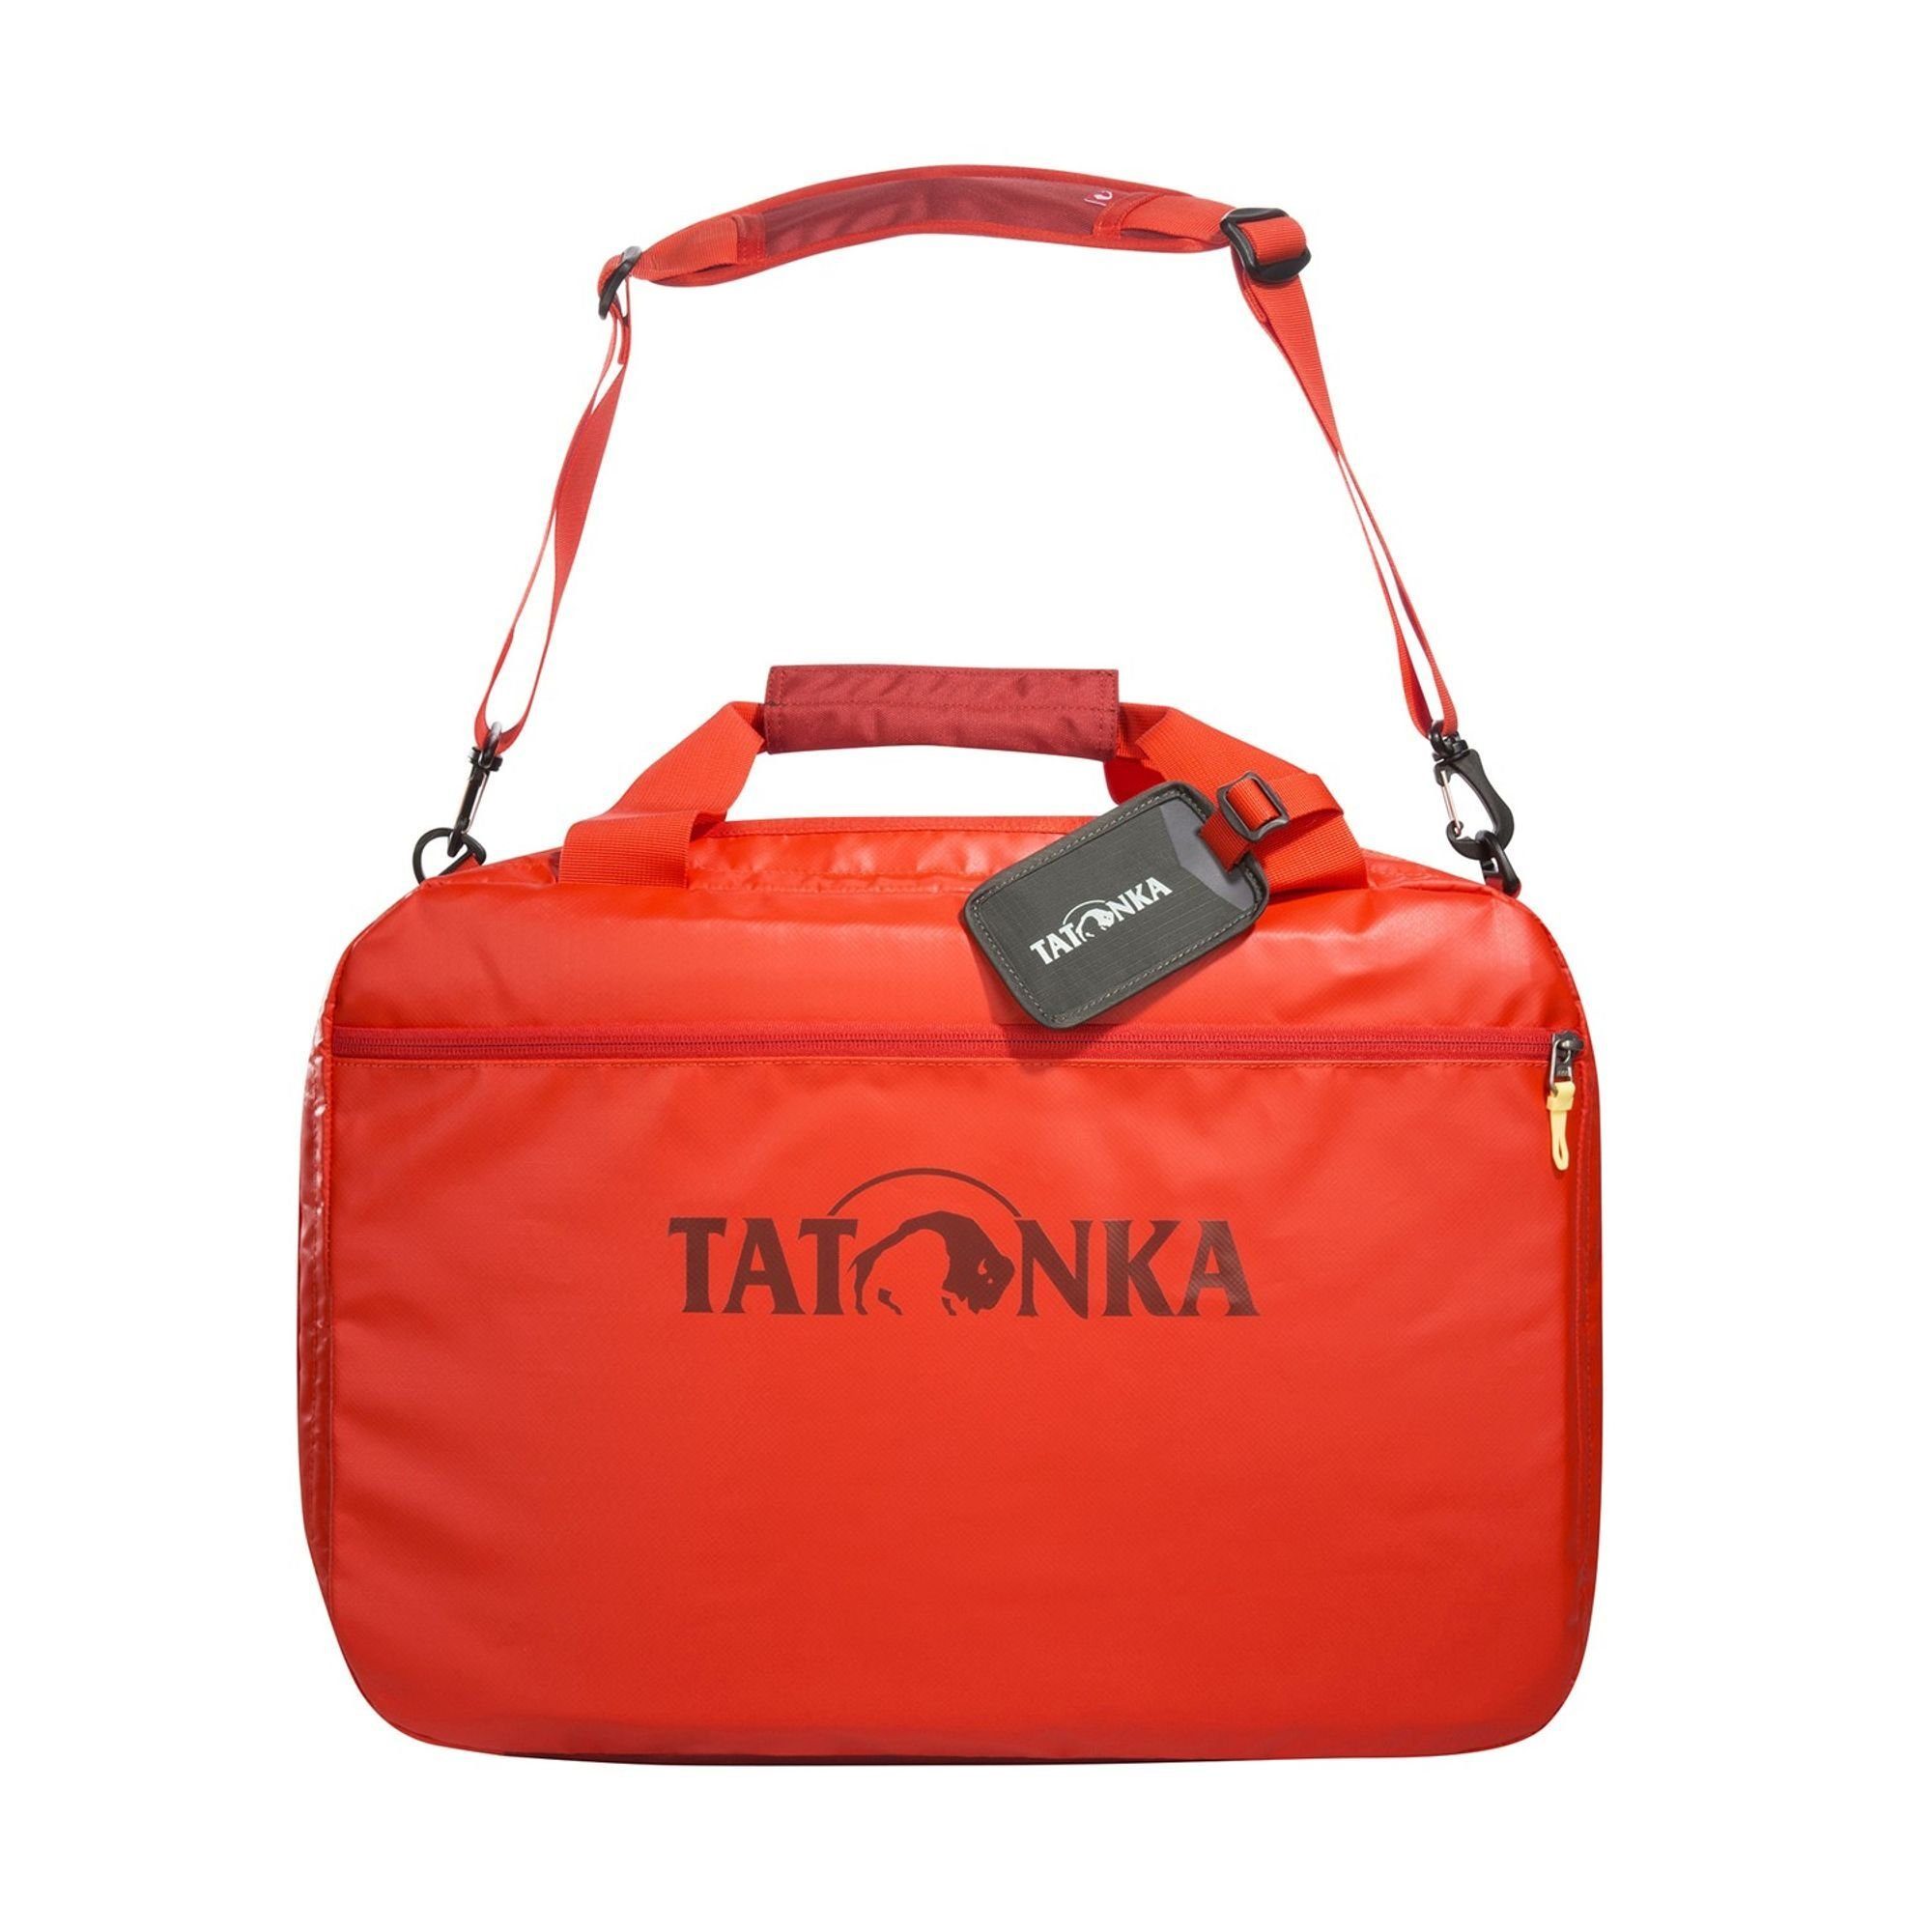 TATONKA® Flugumhänger Flight Barrel, Plane red orange